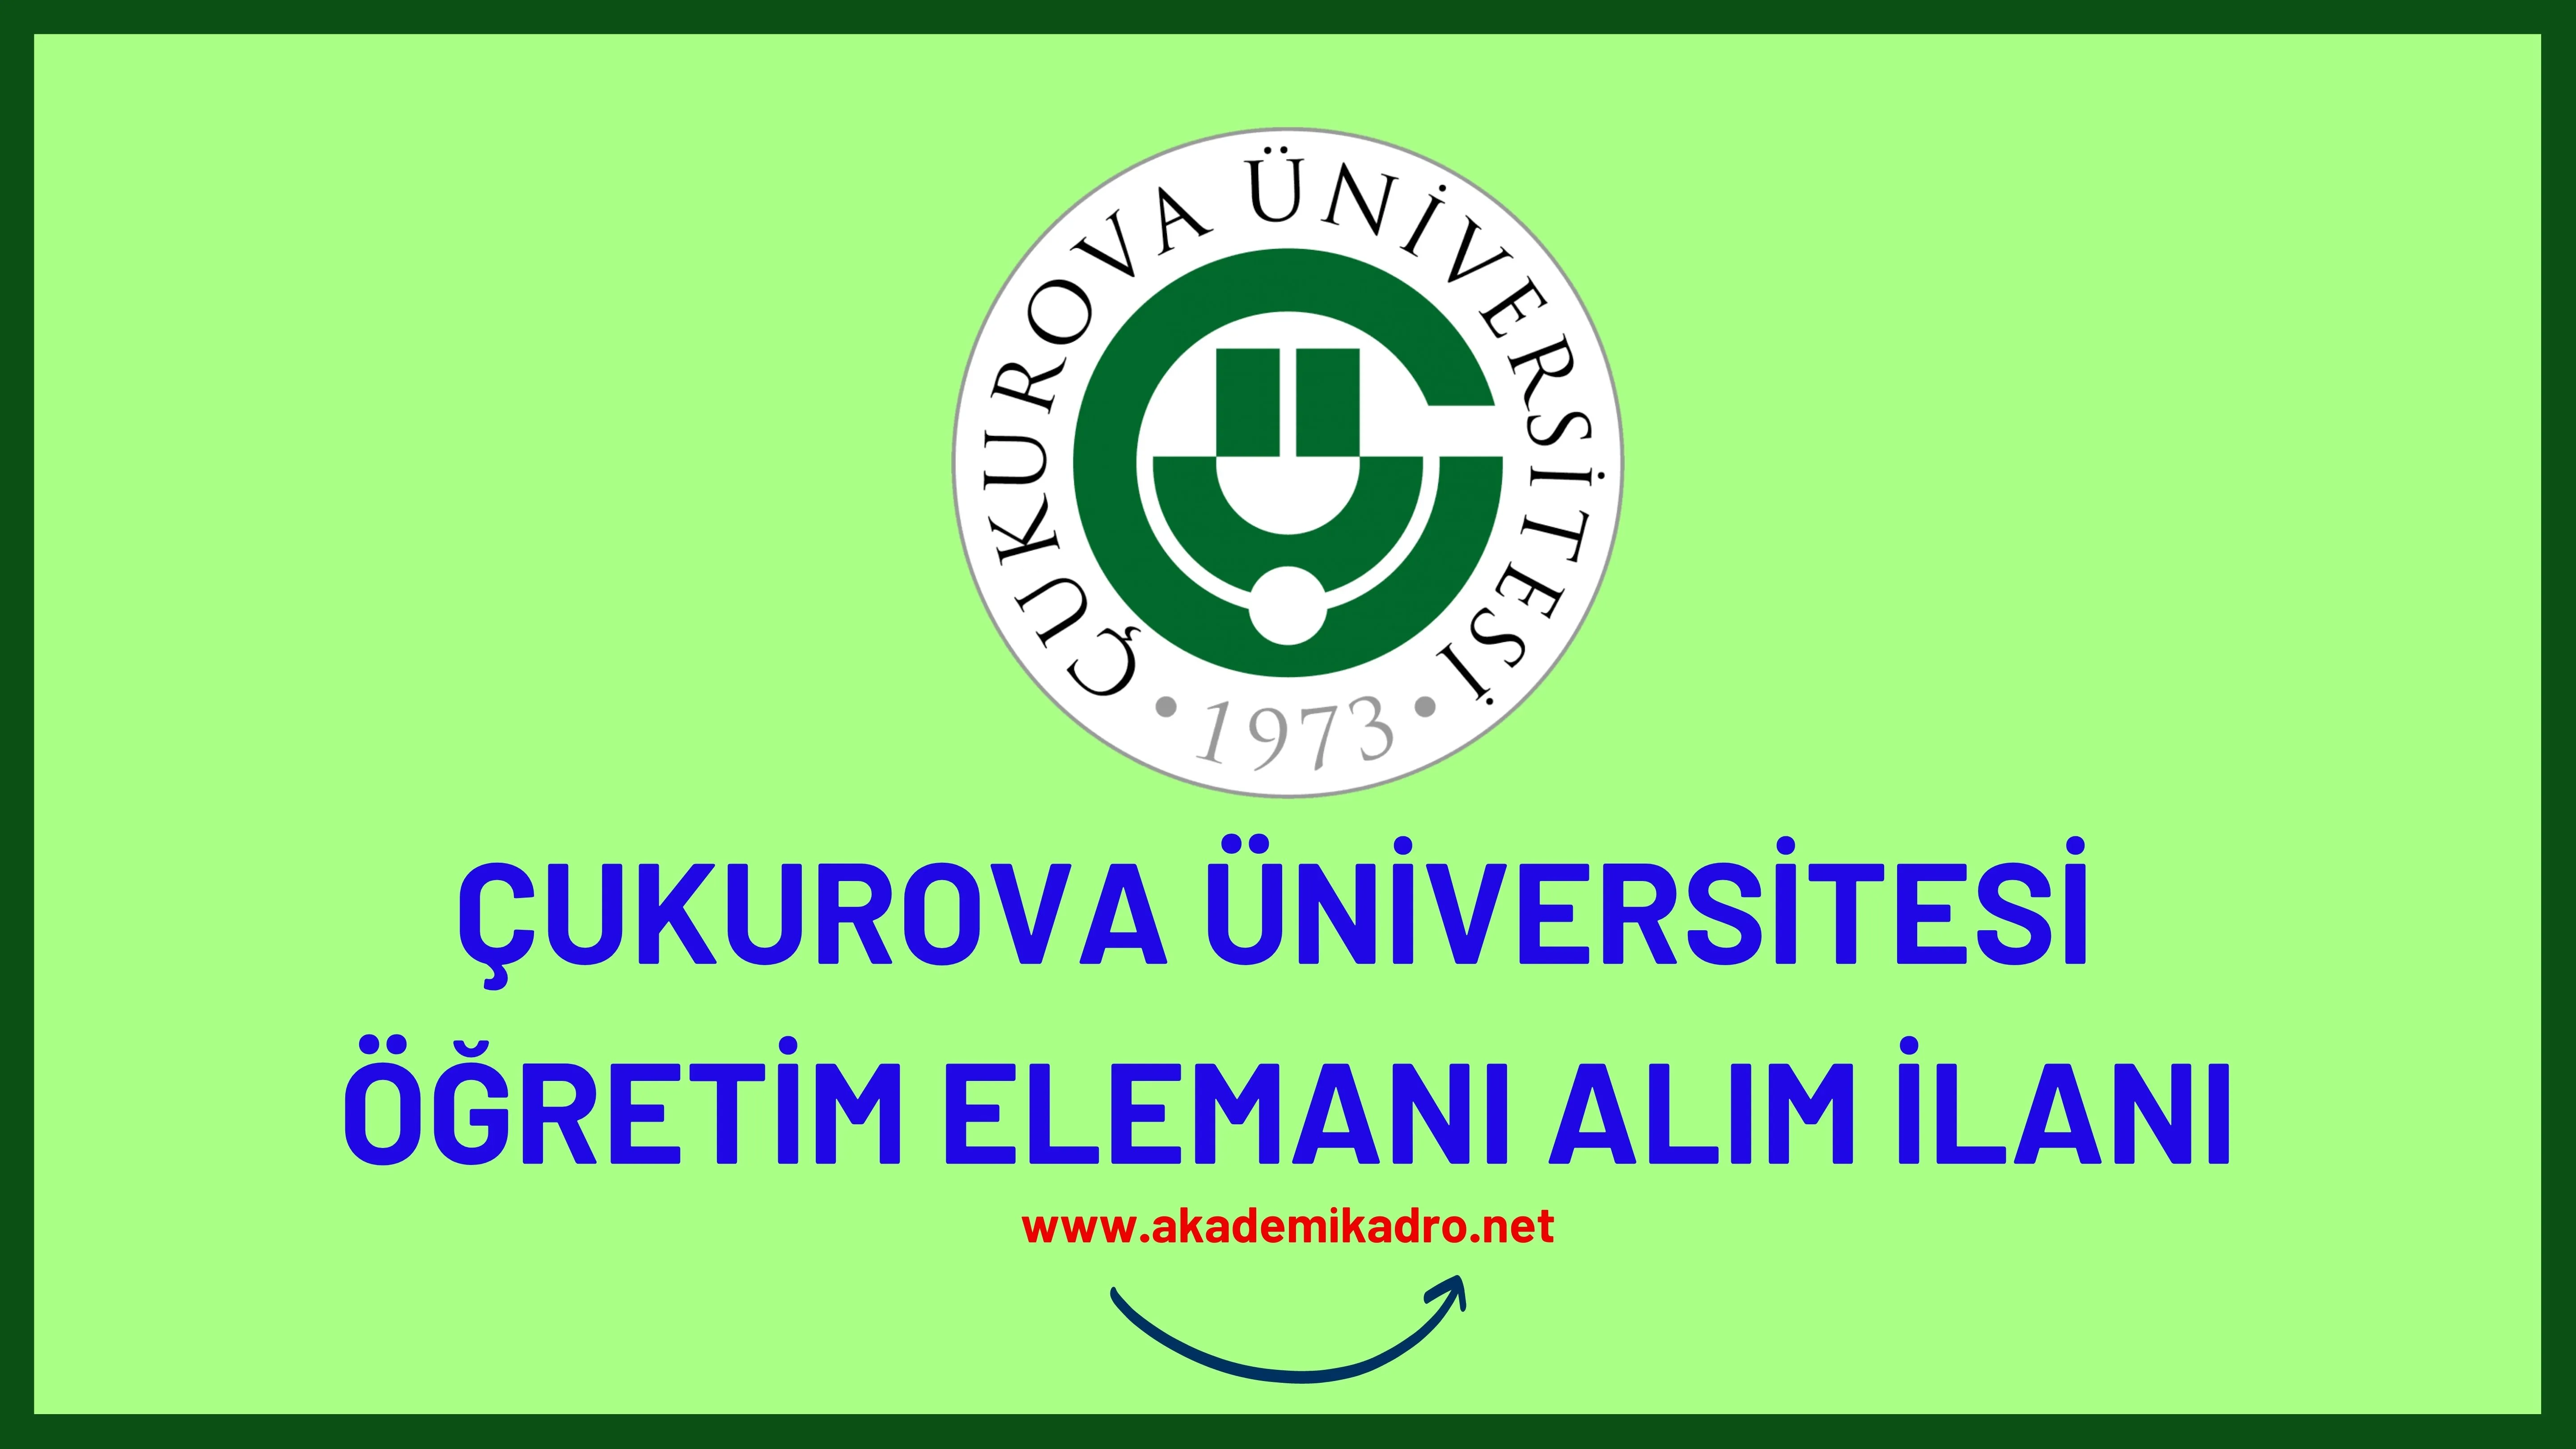 Çukurova Üniversitesi 13 Öğretim Görevlisi ve 22 Araştırma Görevlisi alacak.